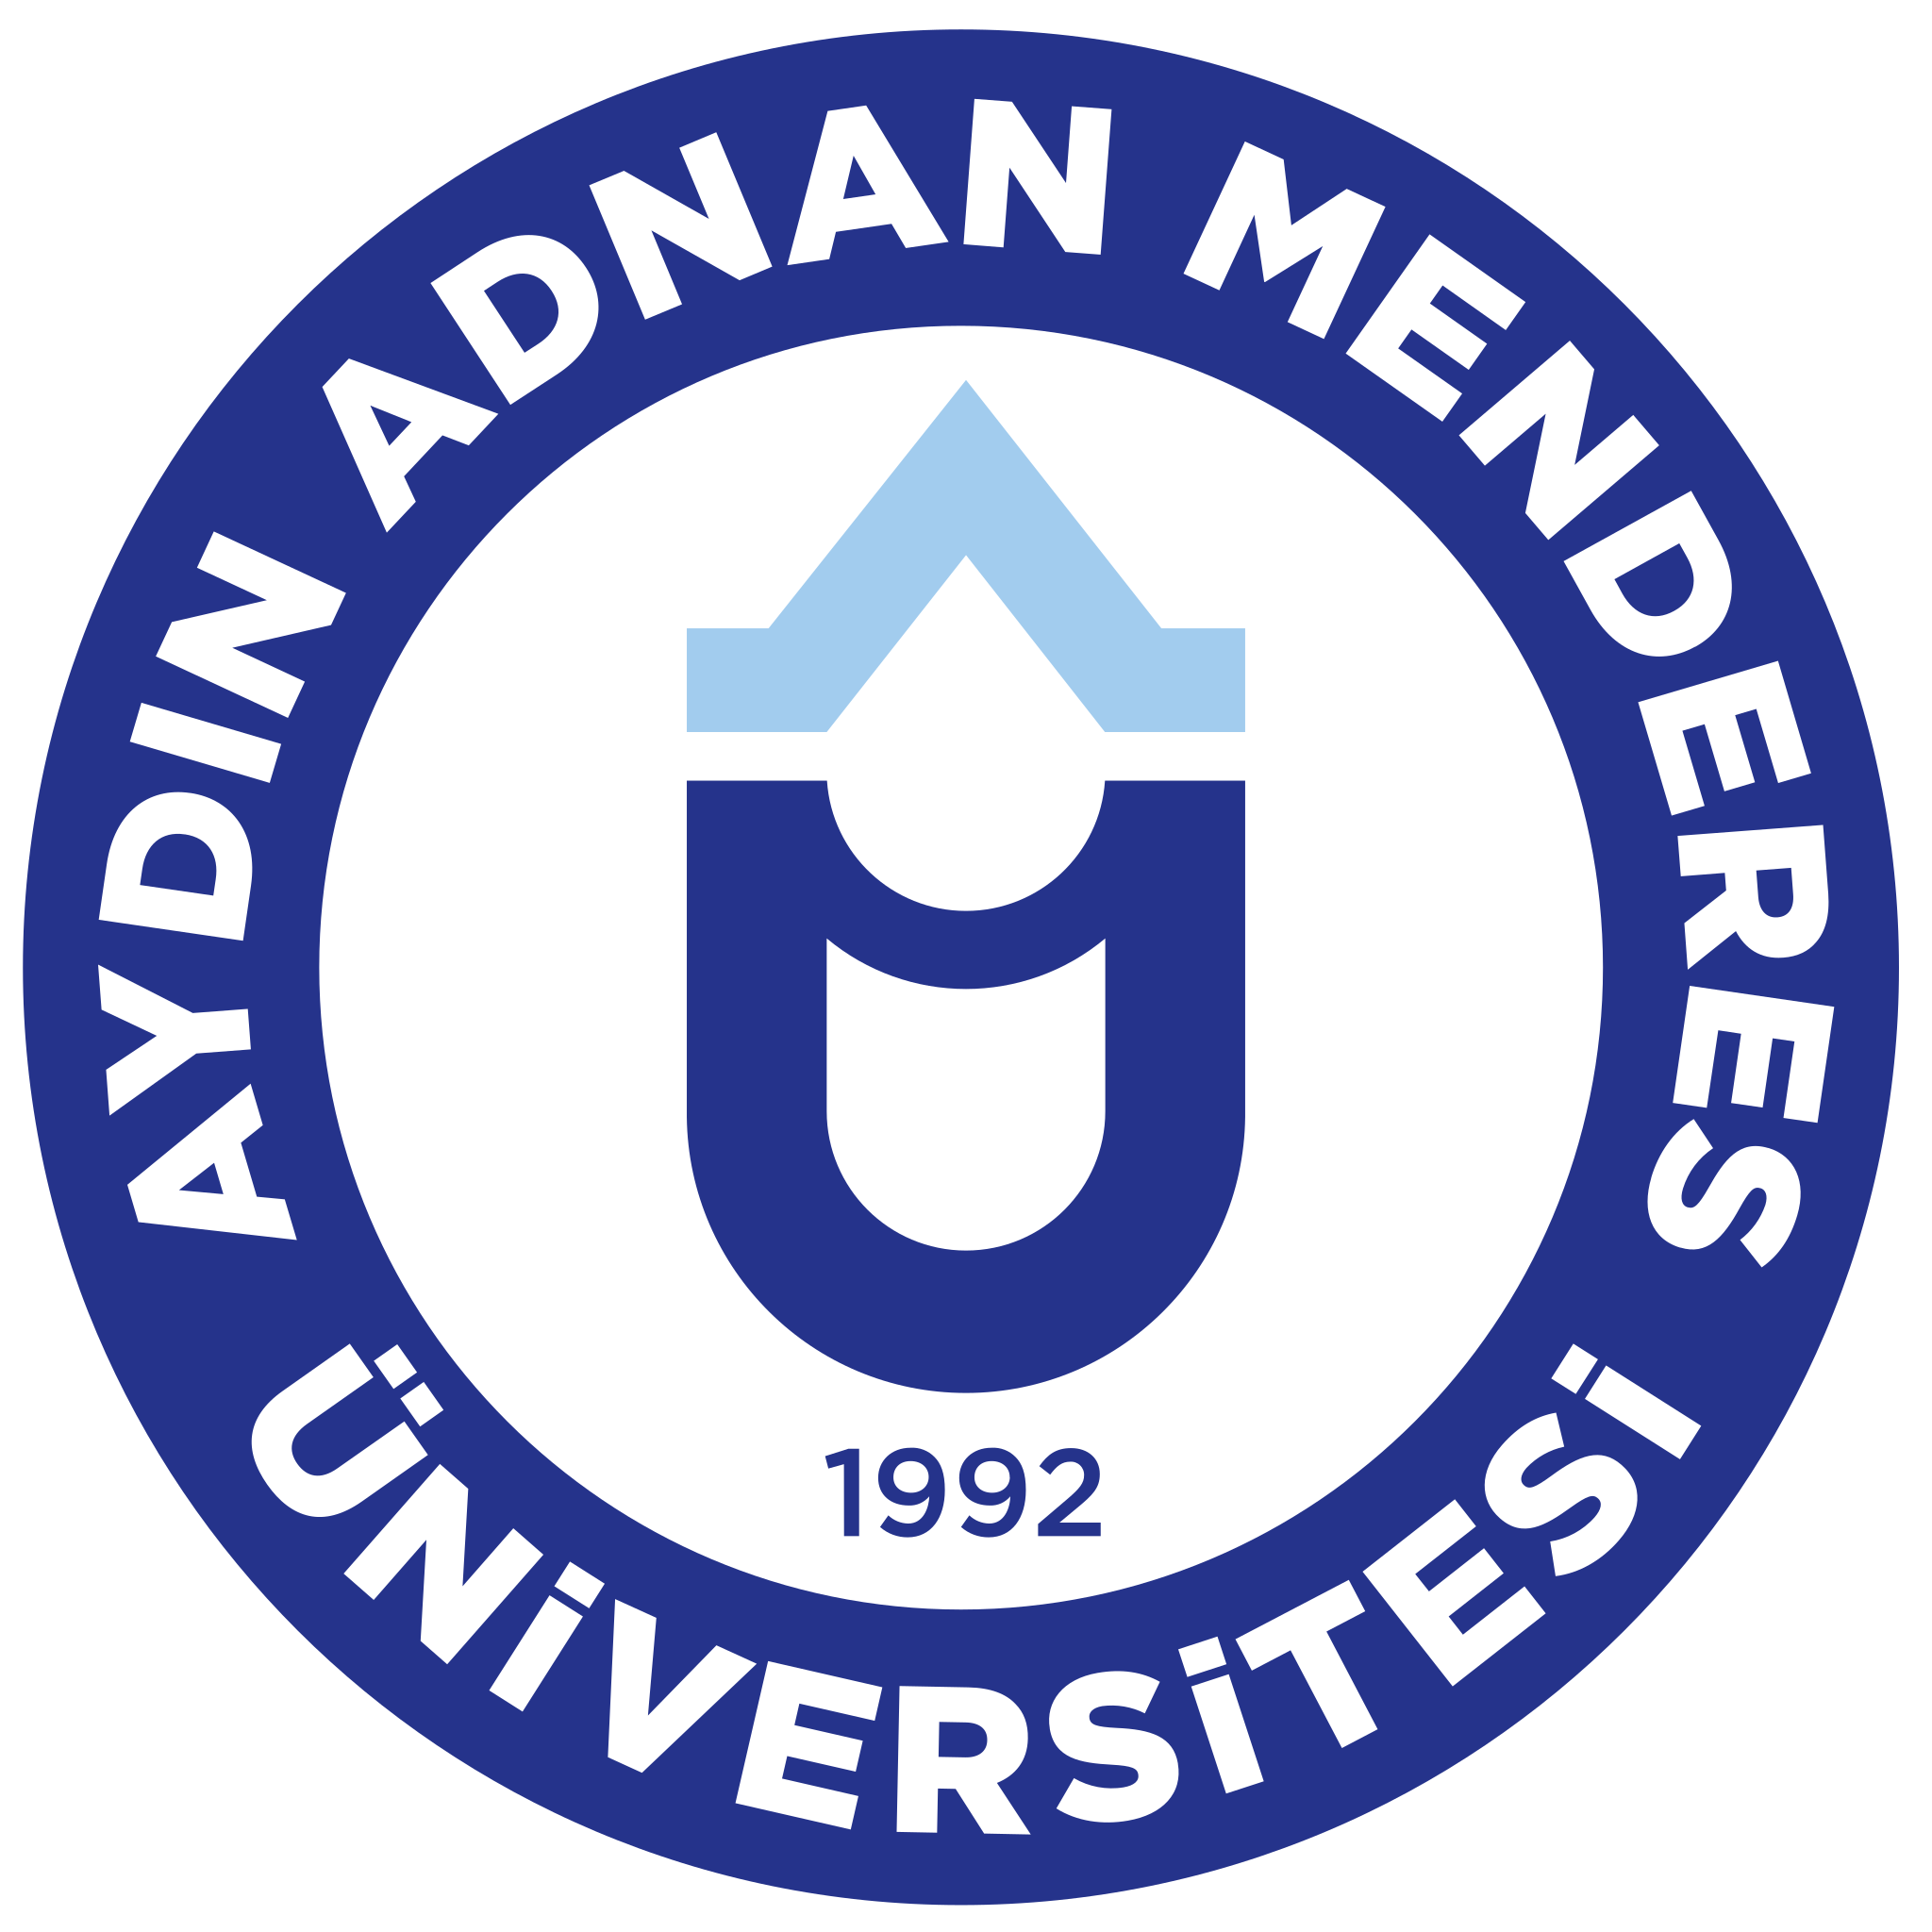 Aydin Adnan Menderes University logo